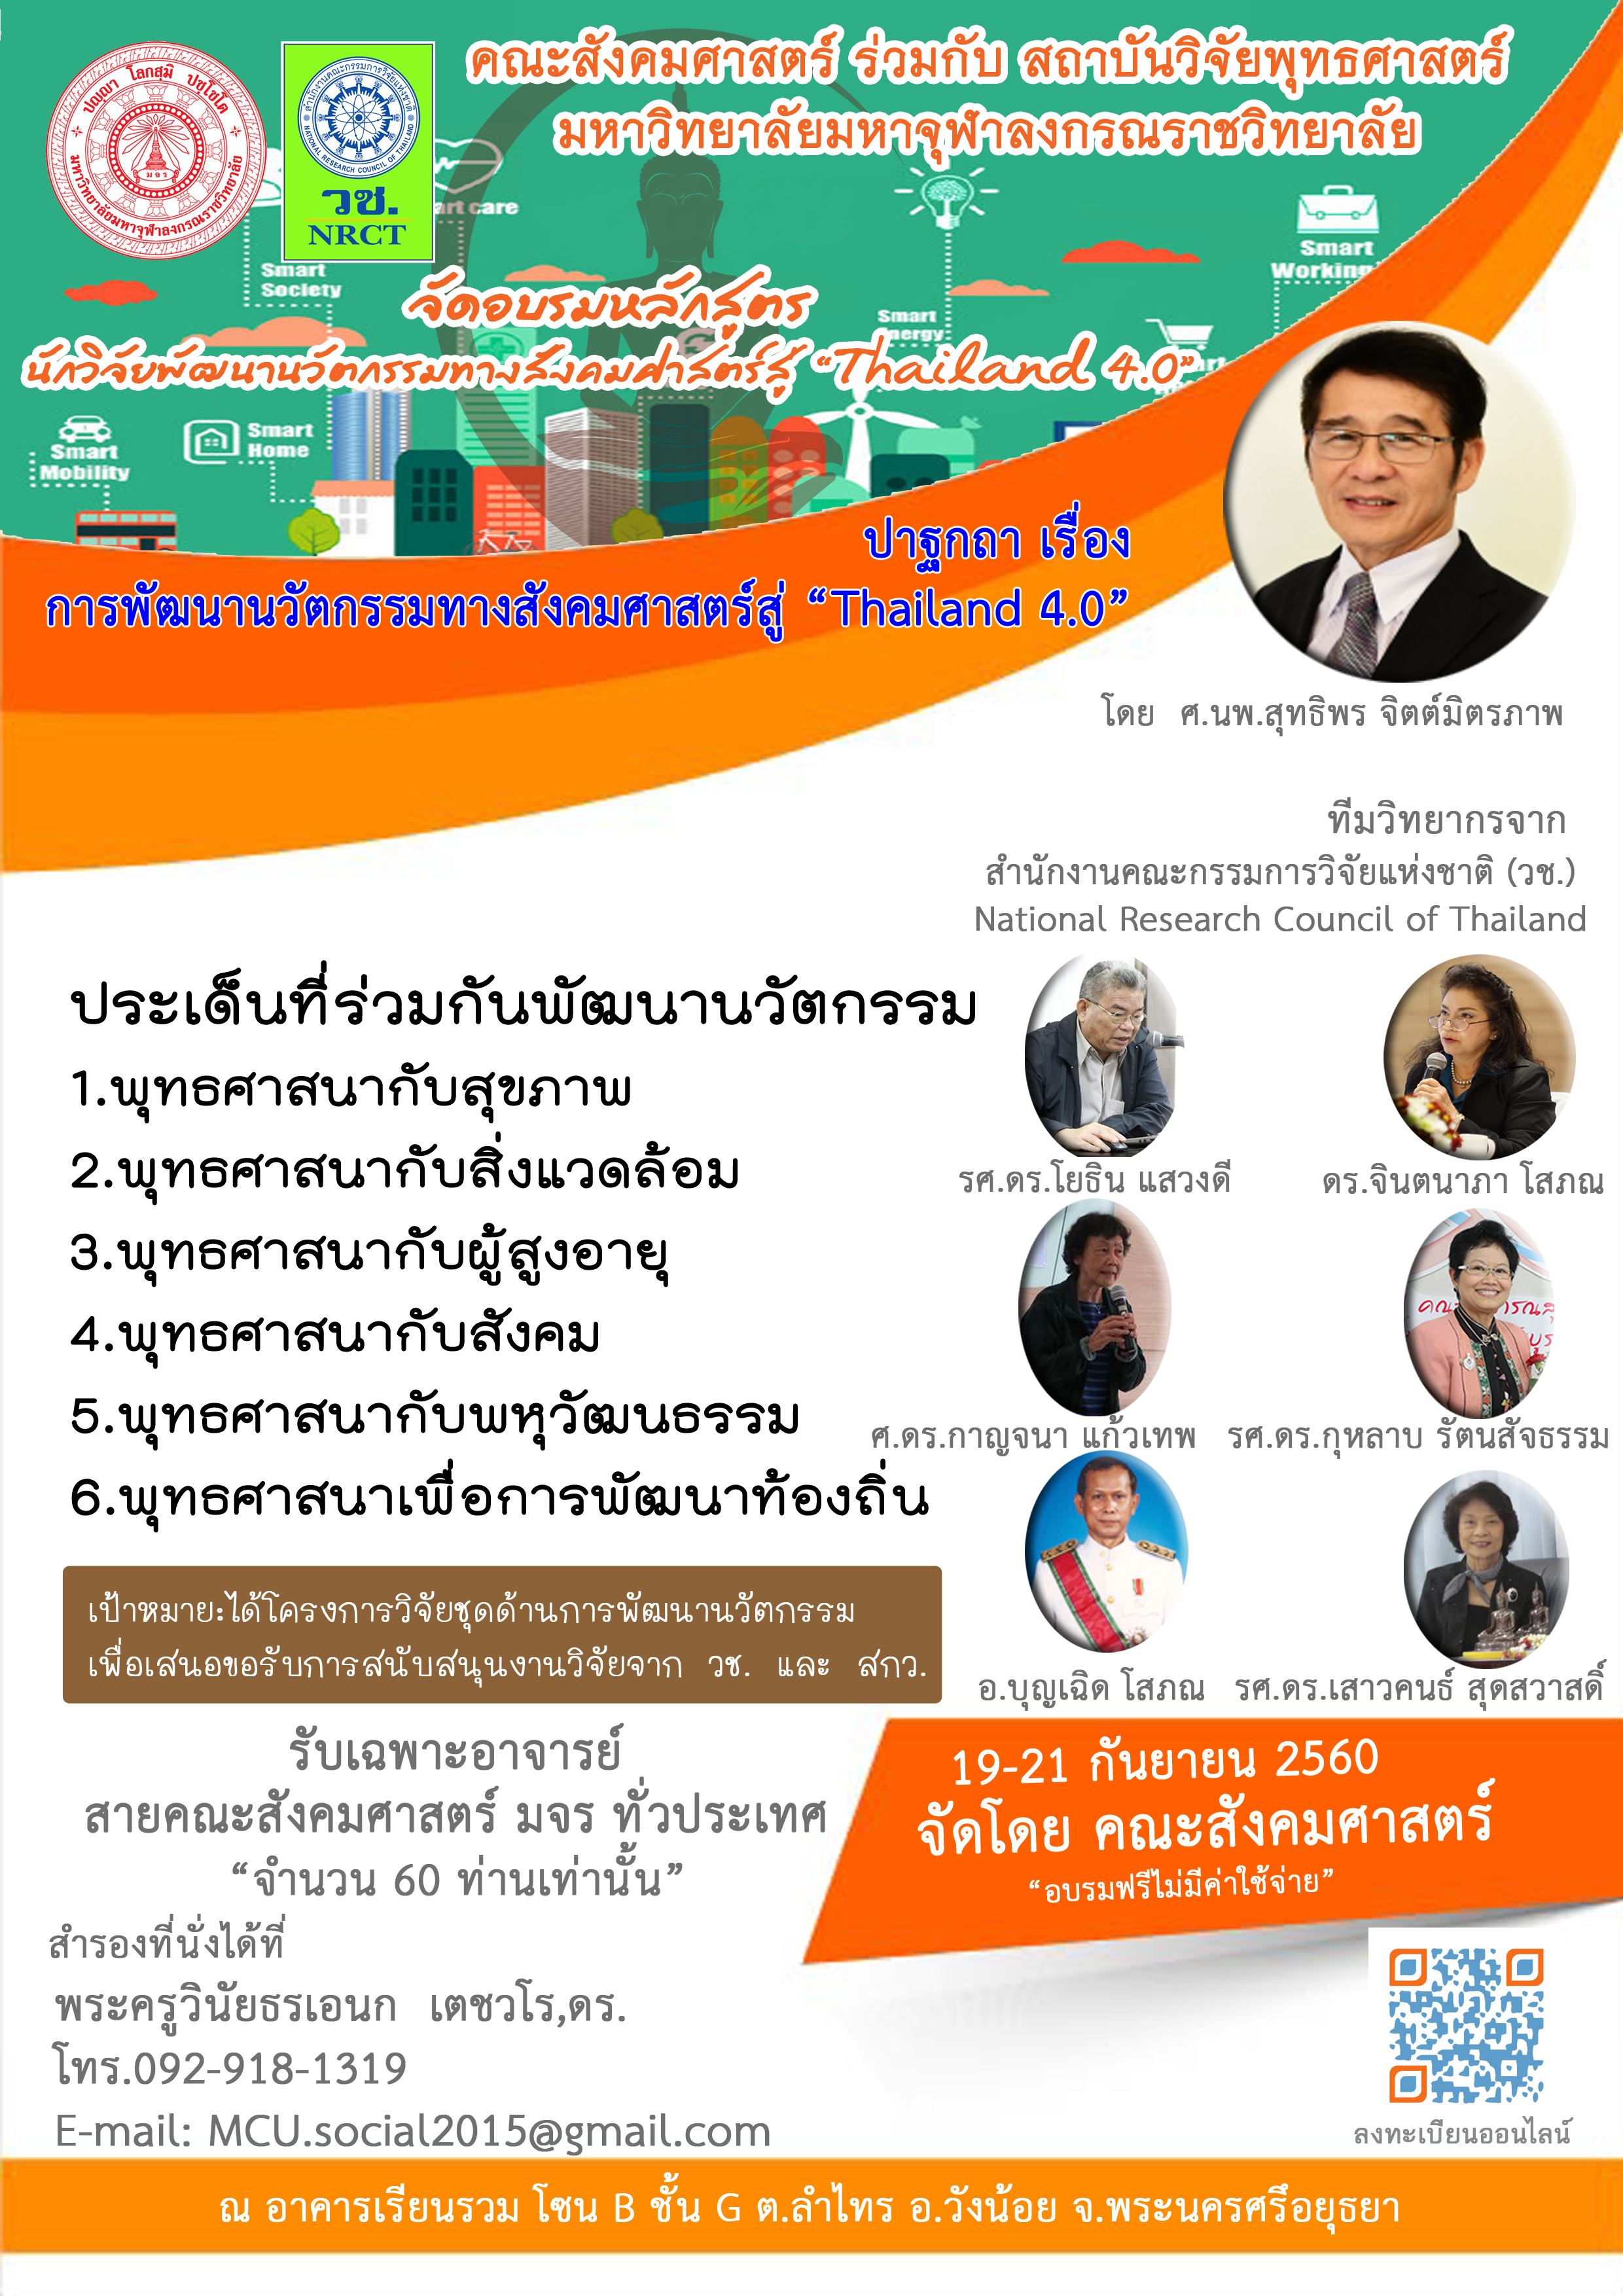 ขอเชิญร่วมเข้าบรมหลักสูตร   “นักวิจัยพัฒนานวัตกรรมทางสังคมศาสตร์สู่ Thailand 4.0”